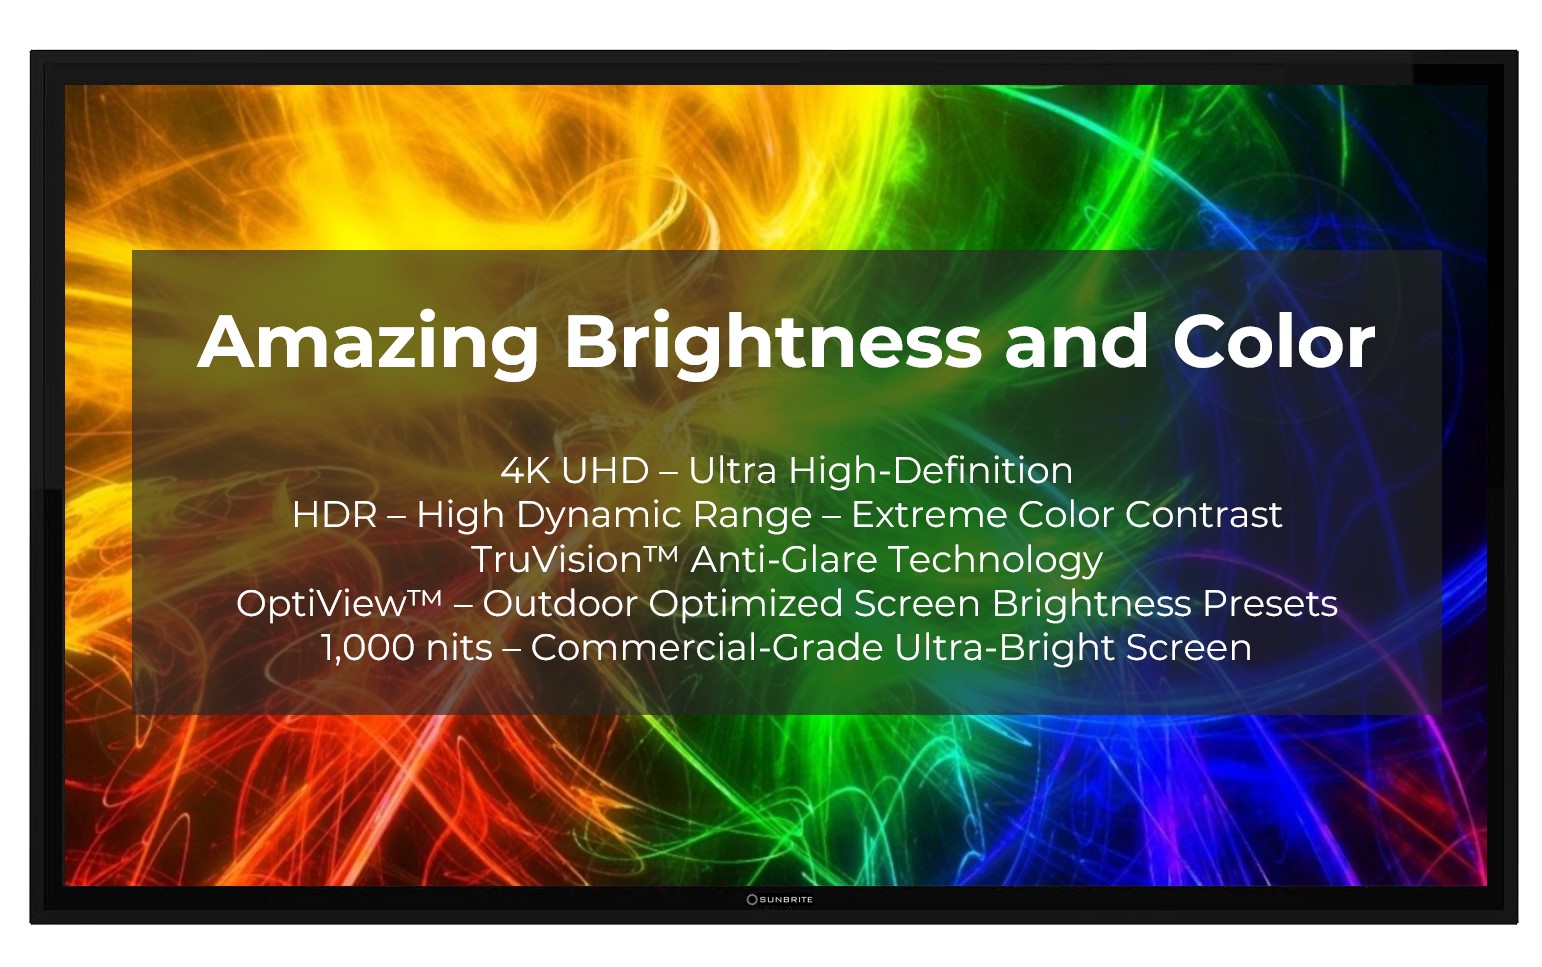 SunBrite Pro 2 Outdoor TV Bright Screen 